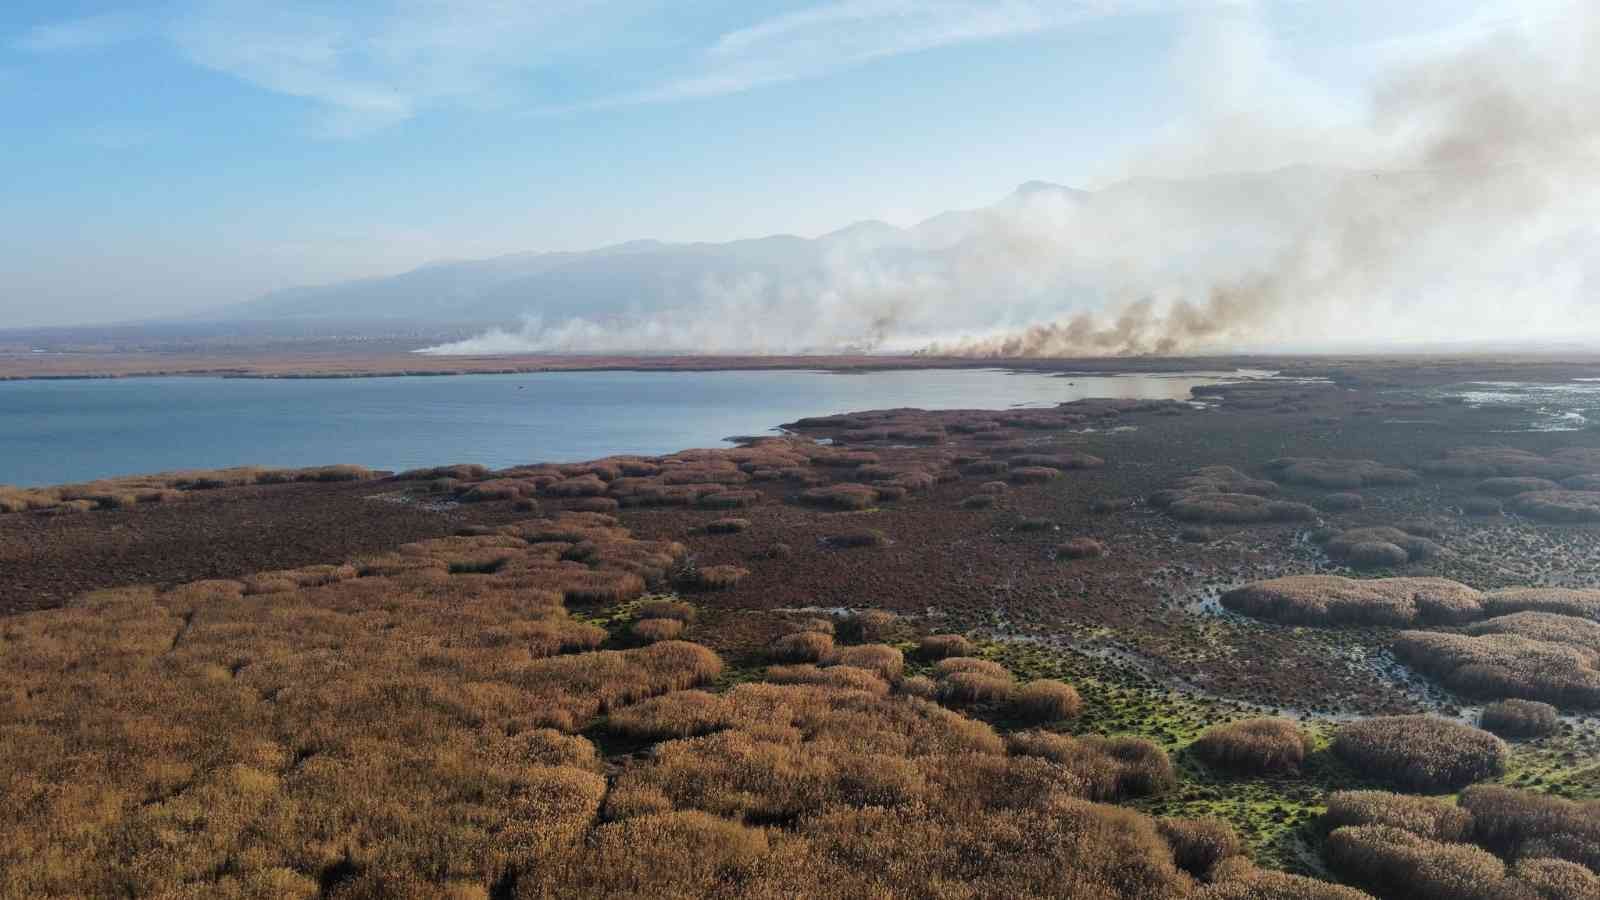 Eber Gölü’nde yine yangınlar başladı #afyonkarahisar